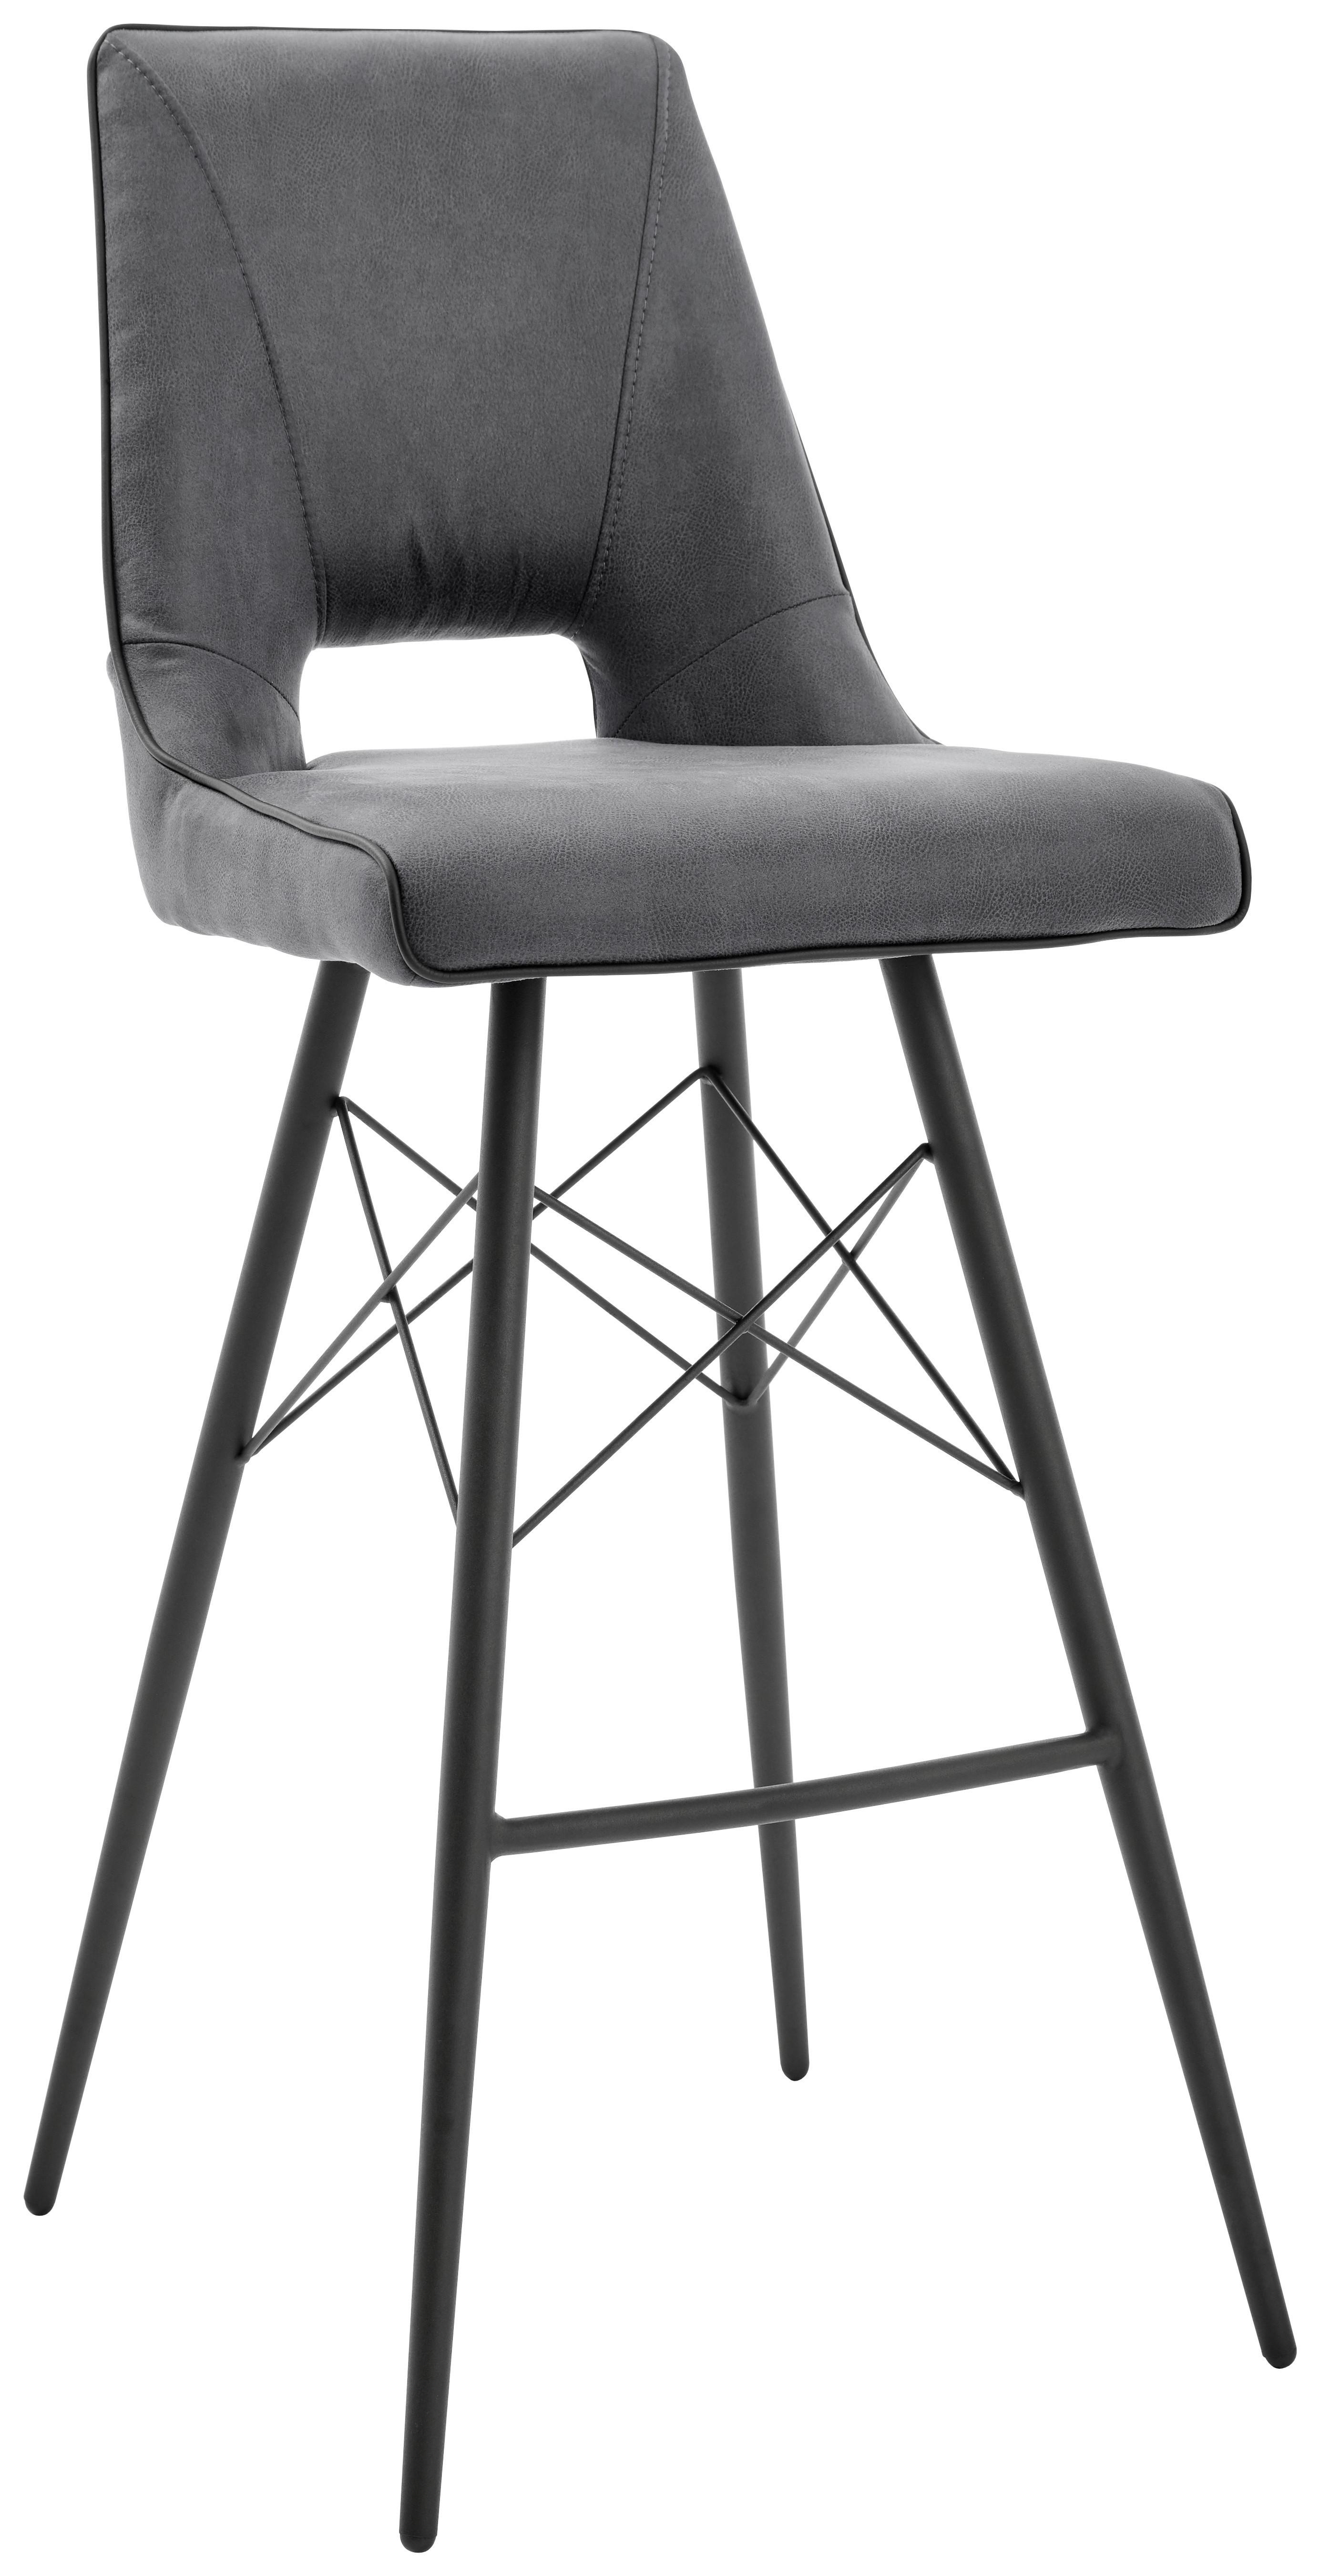 Barski Stol Celina - siva/črna, Moderno, kovina/tekstil (44,5/109,5/51.5cm) - Modern Living